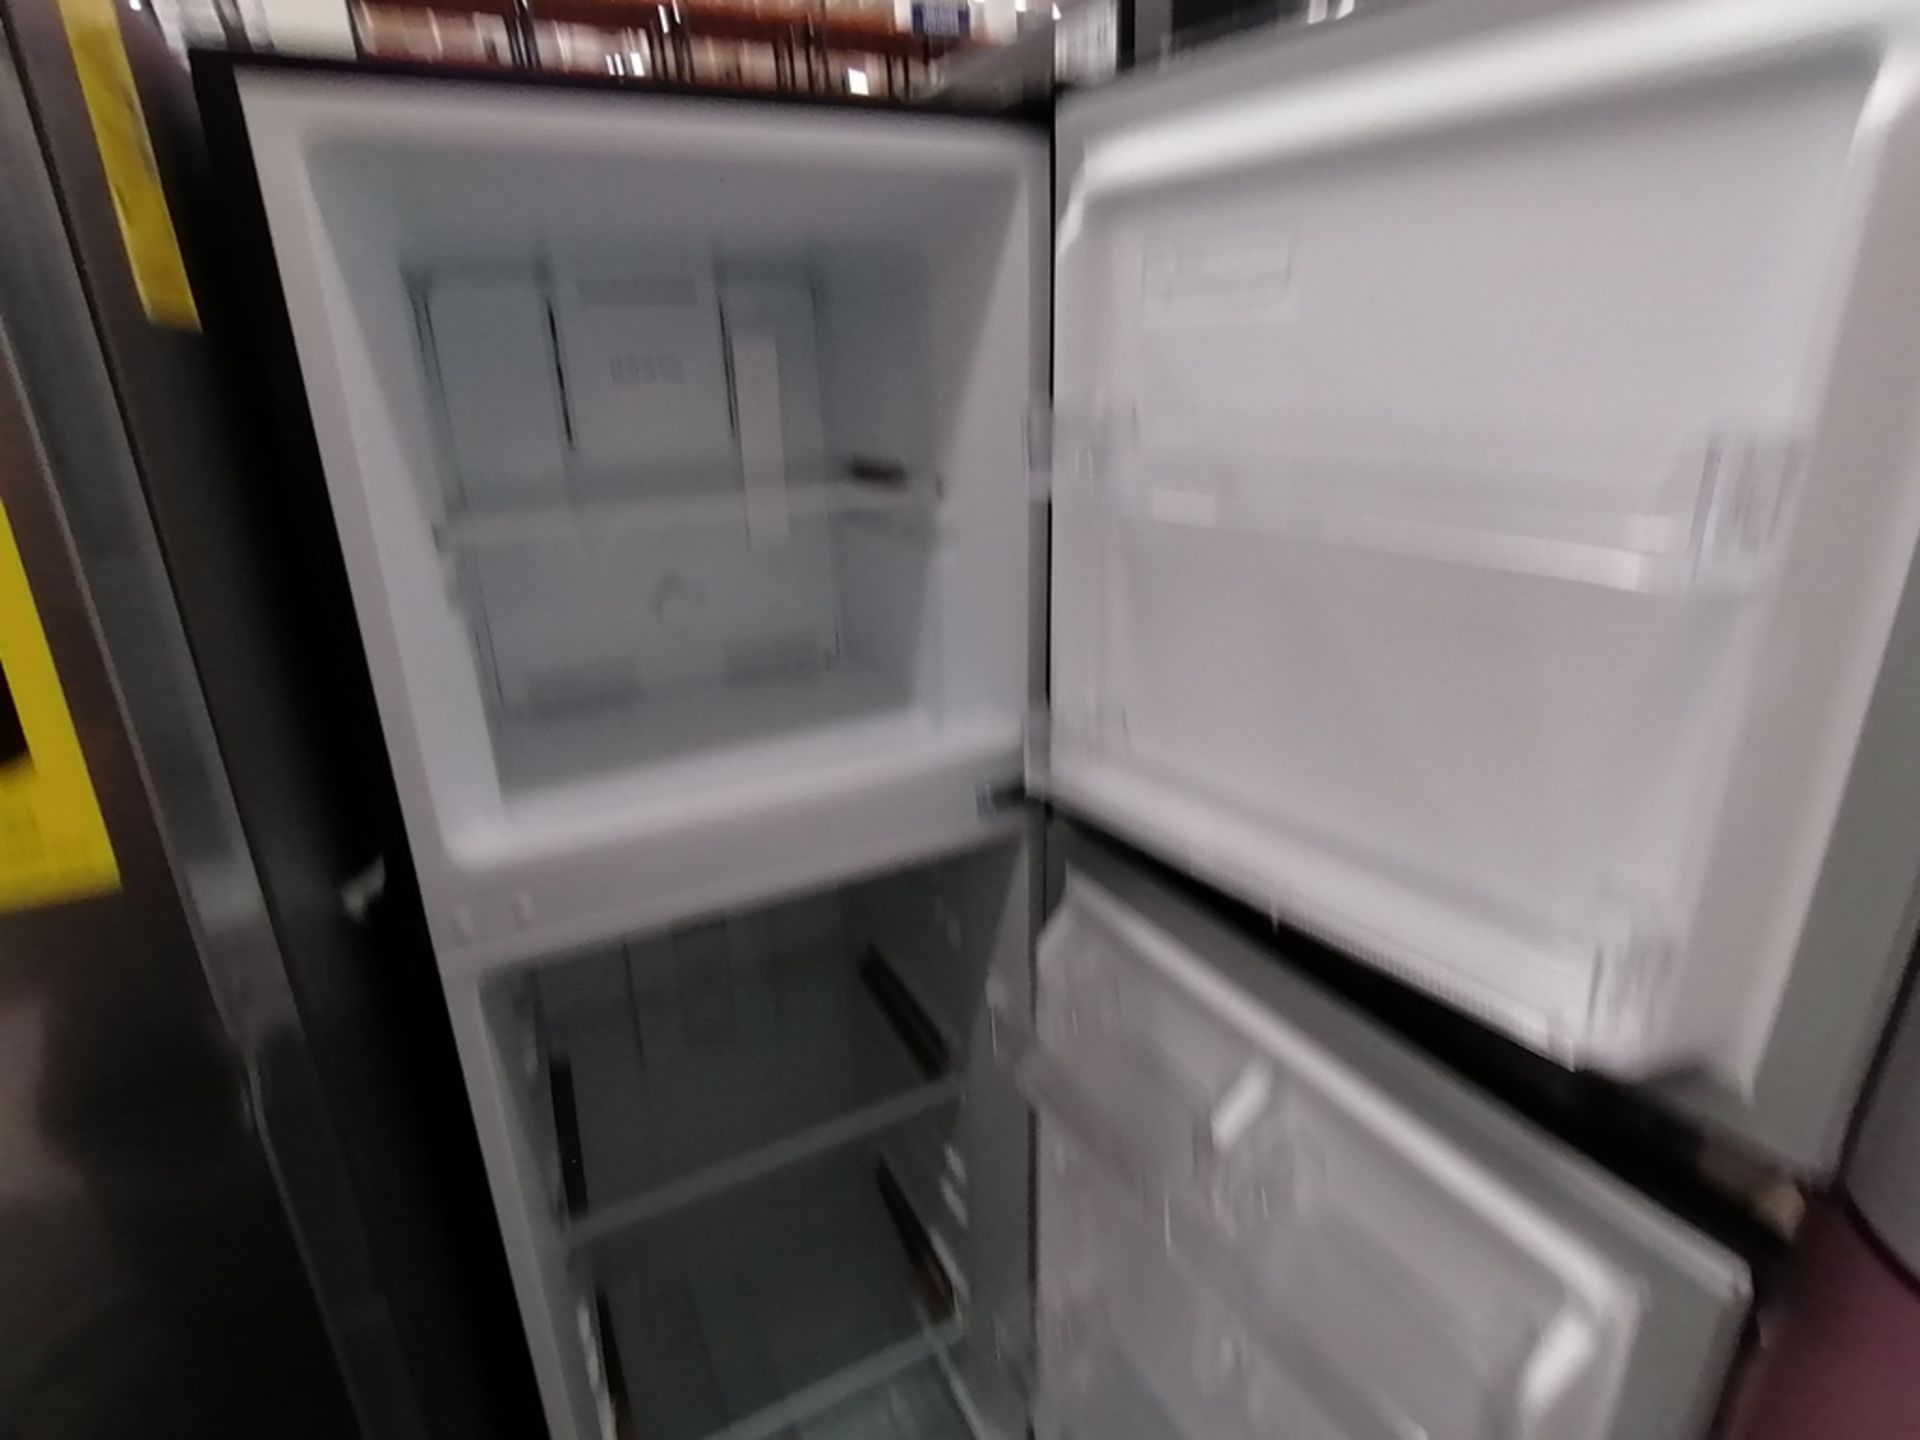 Lote de 2 refrigeradores incluye: 1 Refrigerador, Marca Midea, Modelo MRTN09G2NCS, Serie 341B261870 - Image 11 of 15